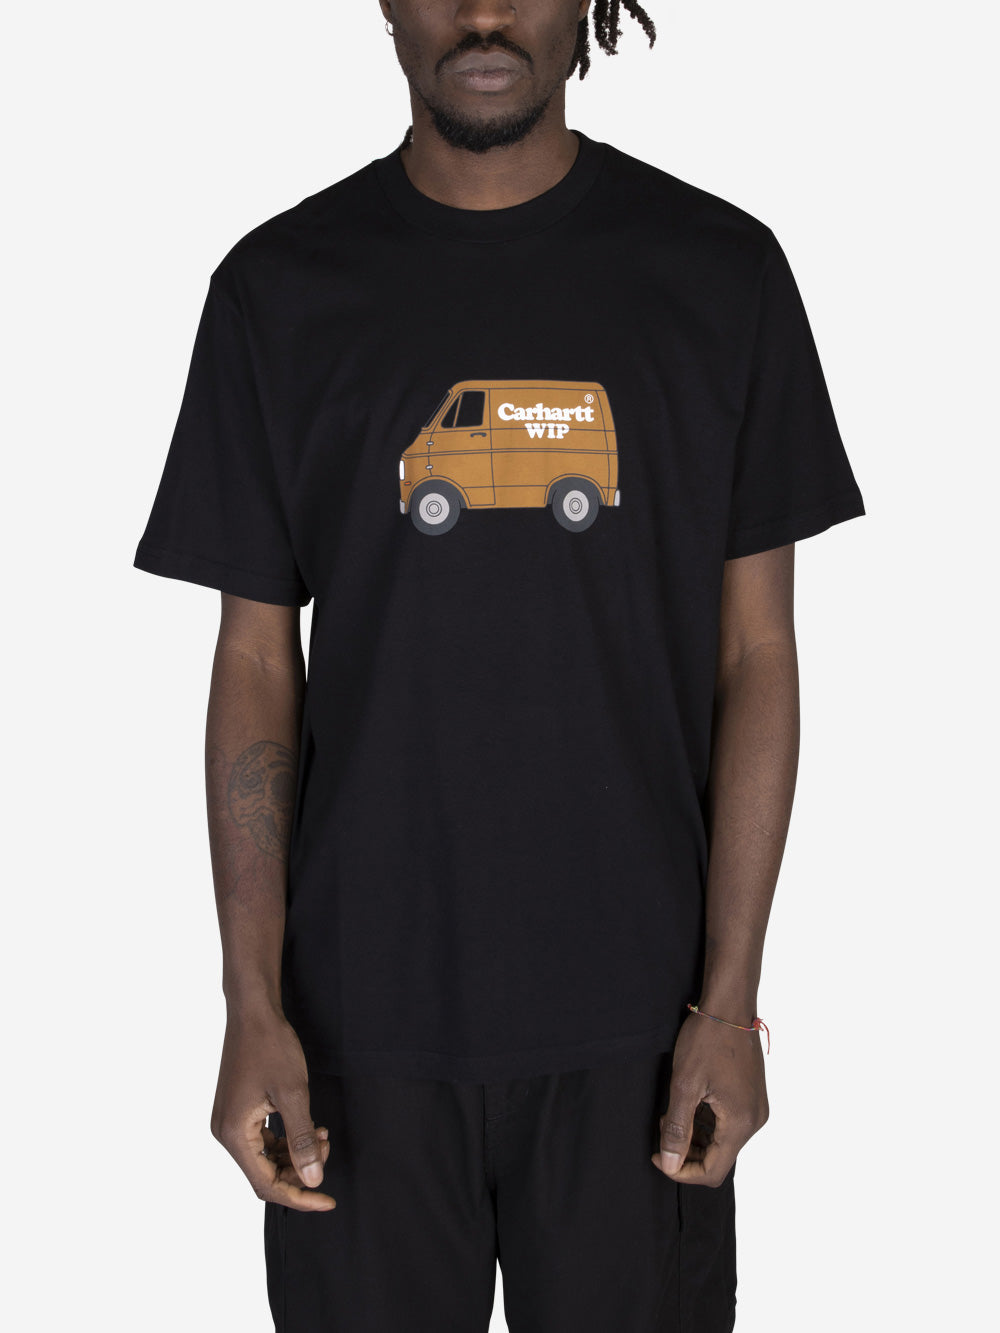 CARHARTT WIP S/S Mystery Machine T-shirt Nero Urbanstaroma